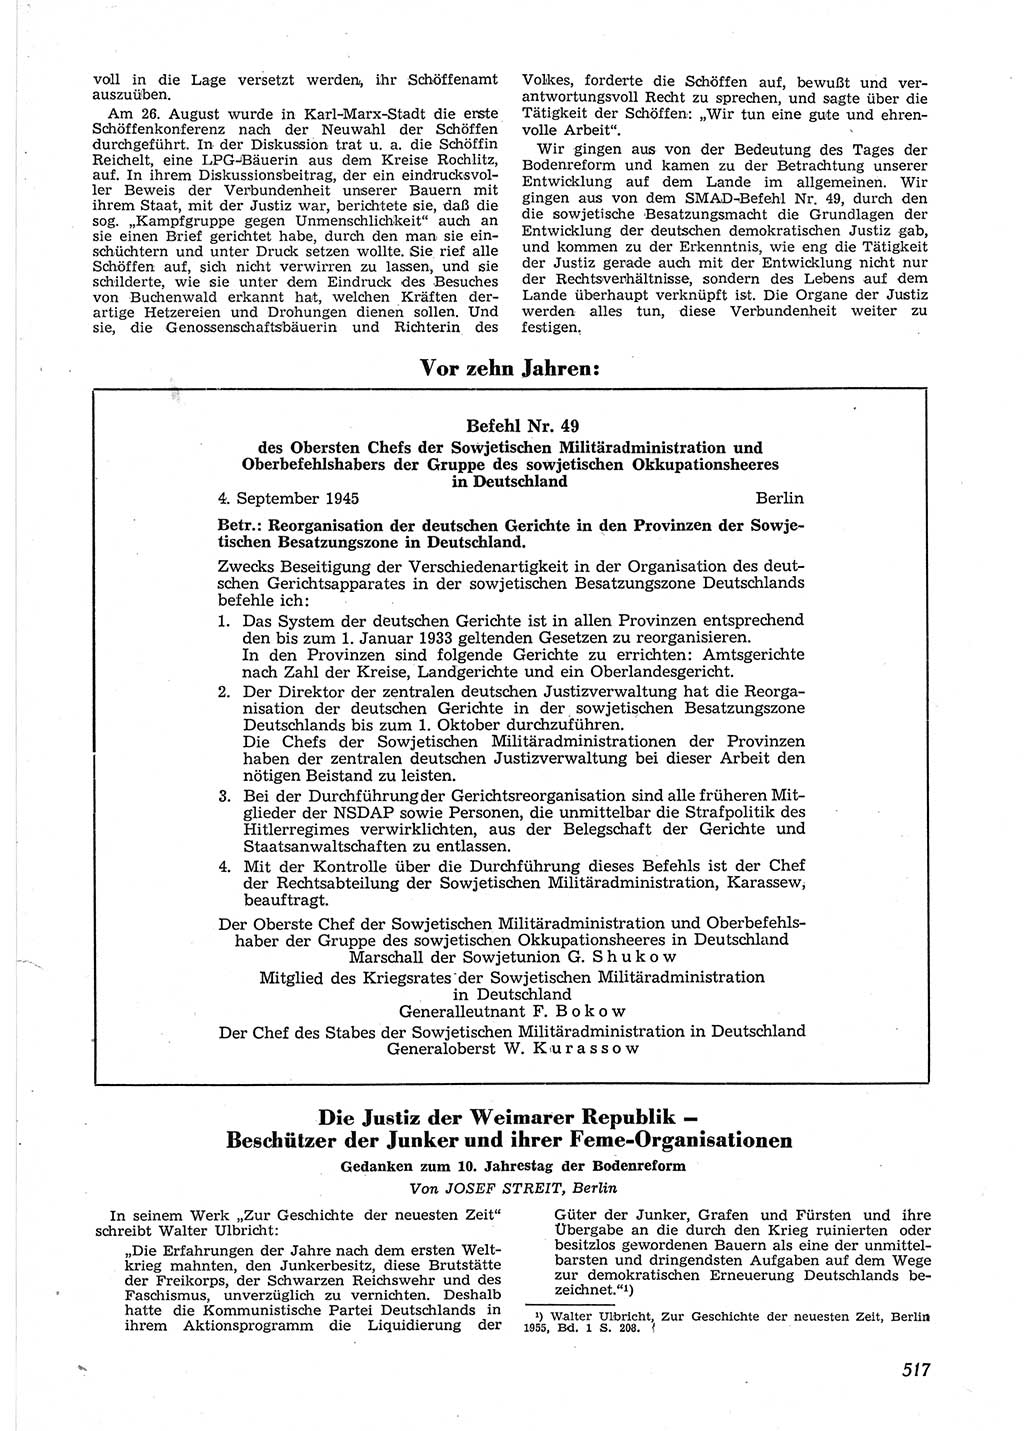 Neue Justiz (NJ), Zeitschrift für Recht und Rechtswissenschaft [Deutsche Demokratische Republik (DDR)], 9. Jahrgang 1955, Seite 517 (NJ DDR 1955, S. 517)